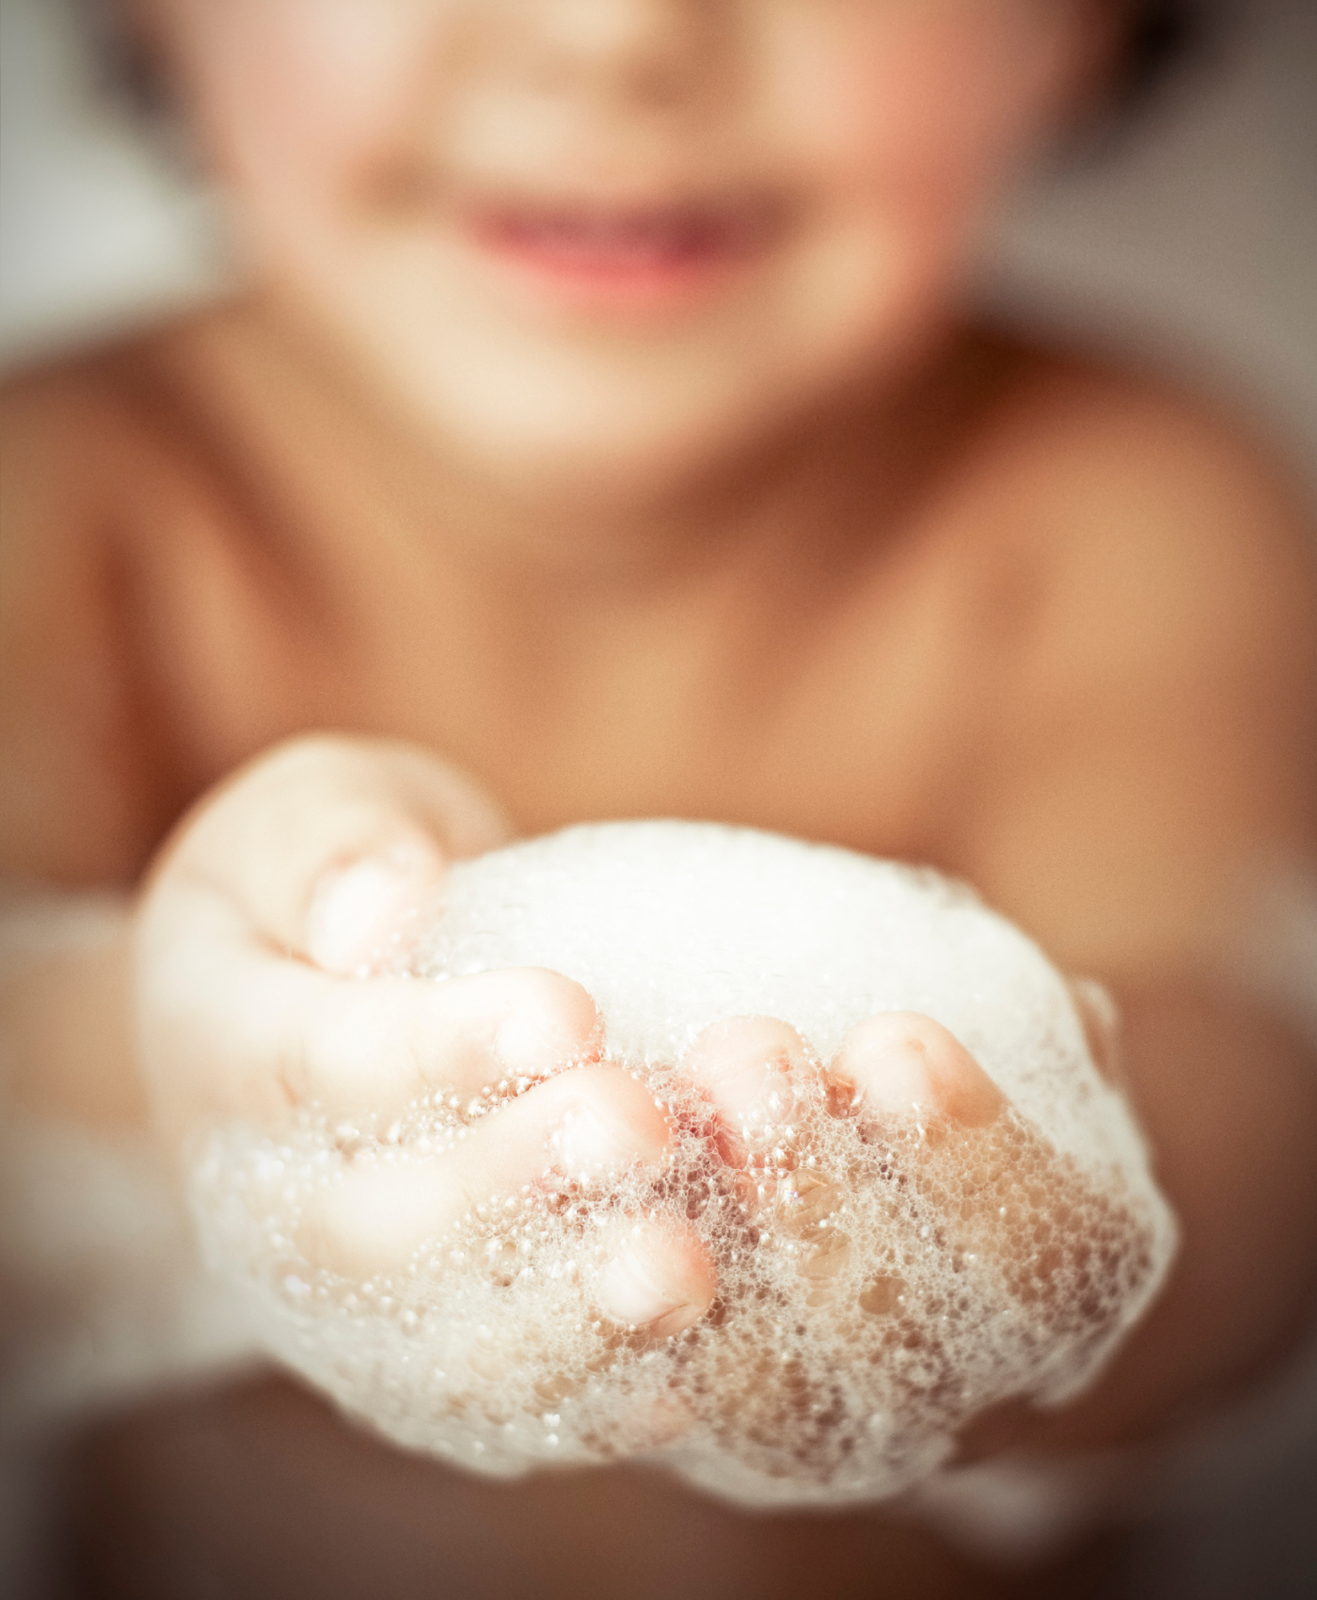 Un enfant qui montre la mousse de son bain entre les mains